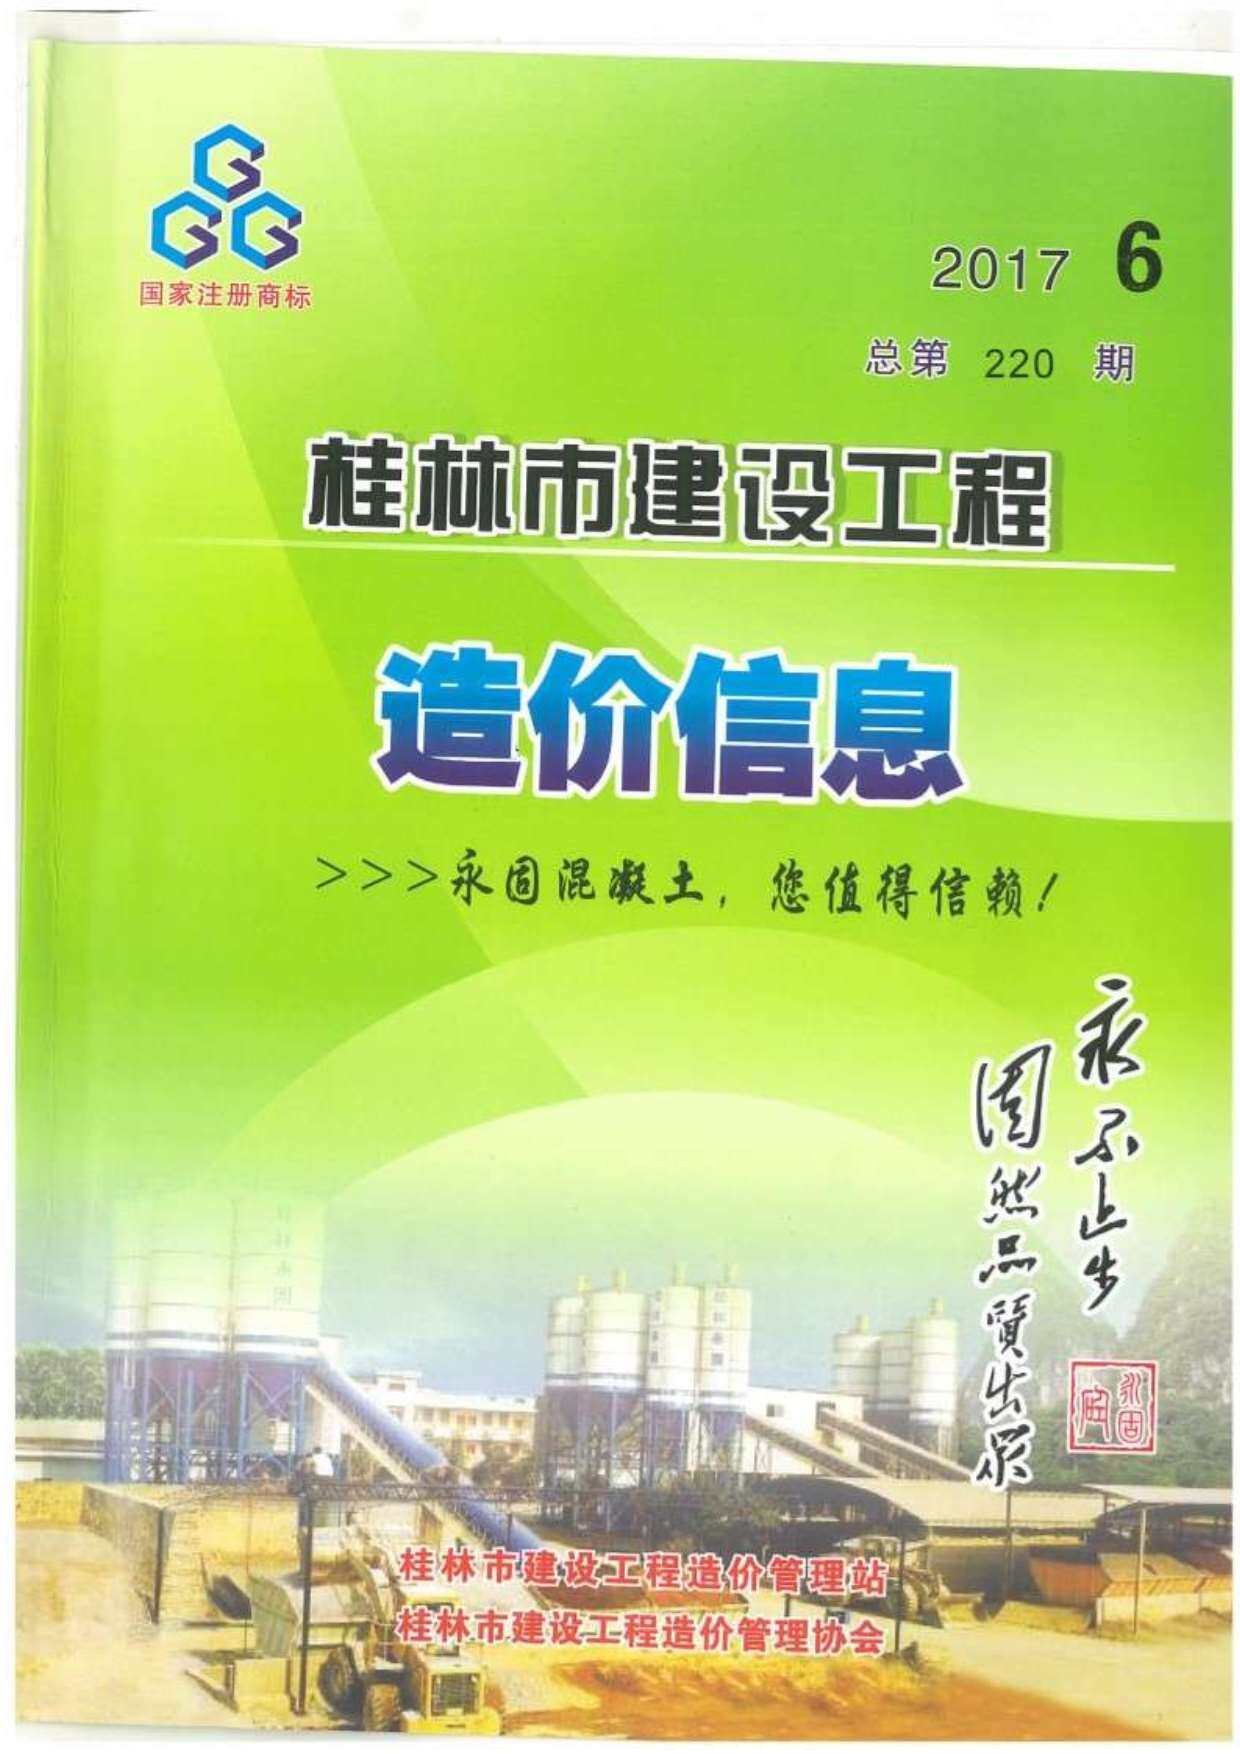 桂林市2017年6月工程造价信息期刊